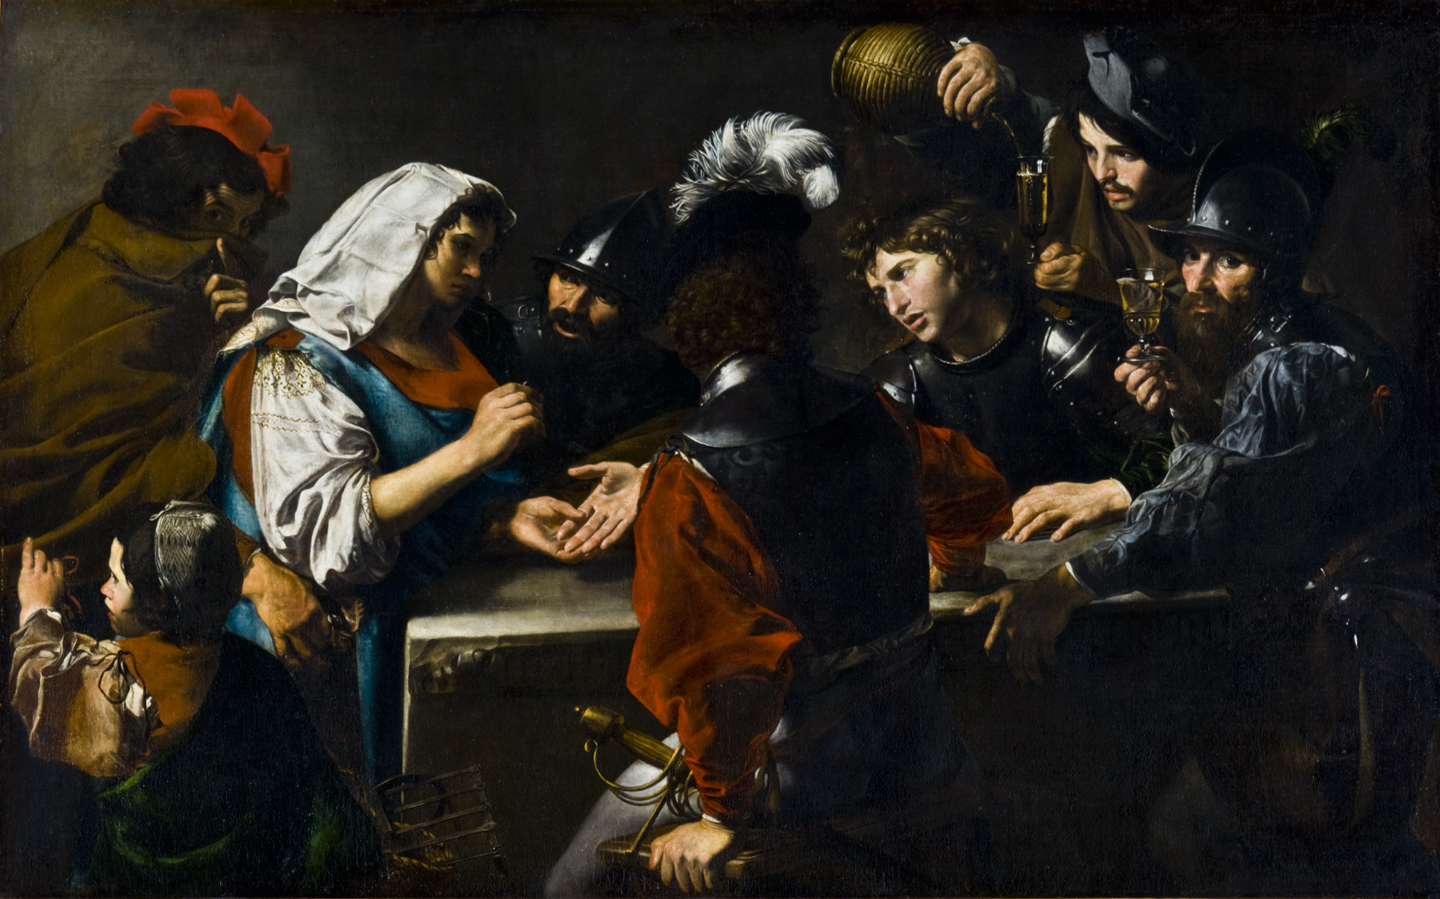 Vidente con soldados by Valentin de Boulogne - c. 1620 - 149.5 x 238.4 cm Museo de Arte de Toledo